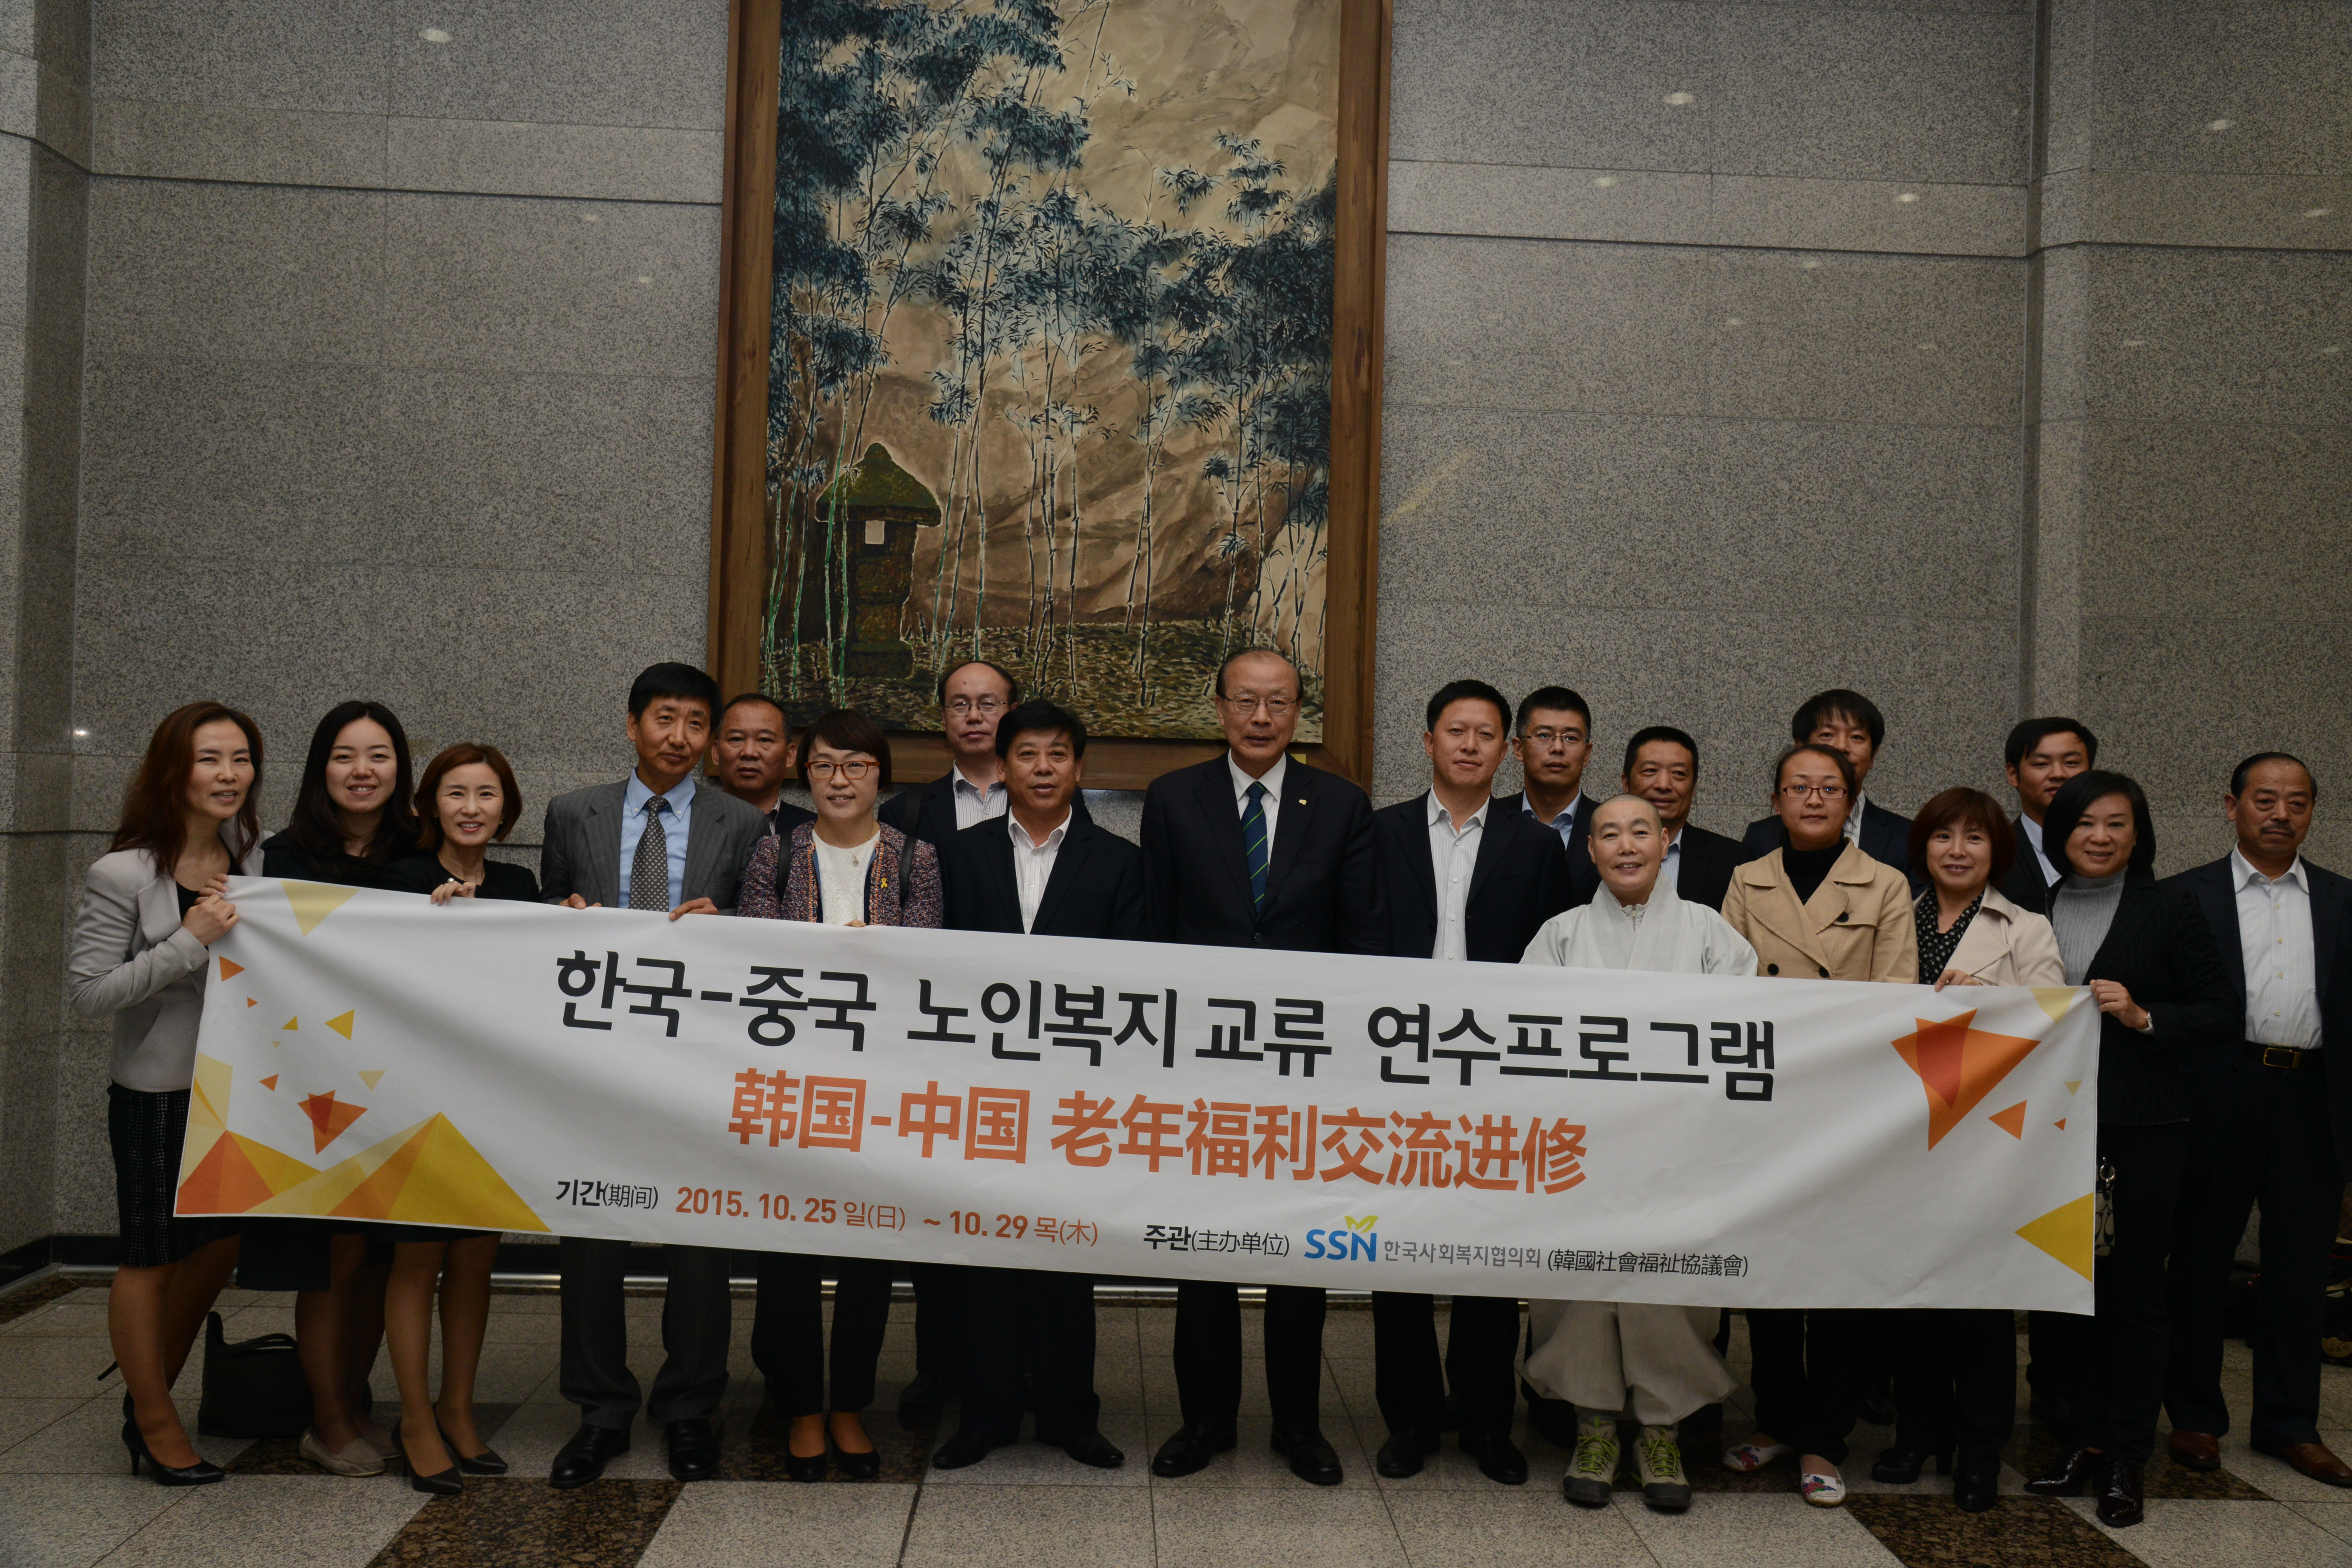 10월 27일 한국사회복지회관 6층 소회의실에서 열린 한국-중국 노인복지 교류 연수프로그램 참가자들의 기념촬영 사진